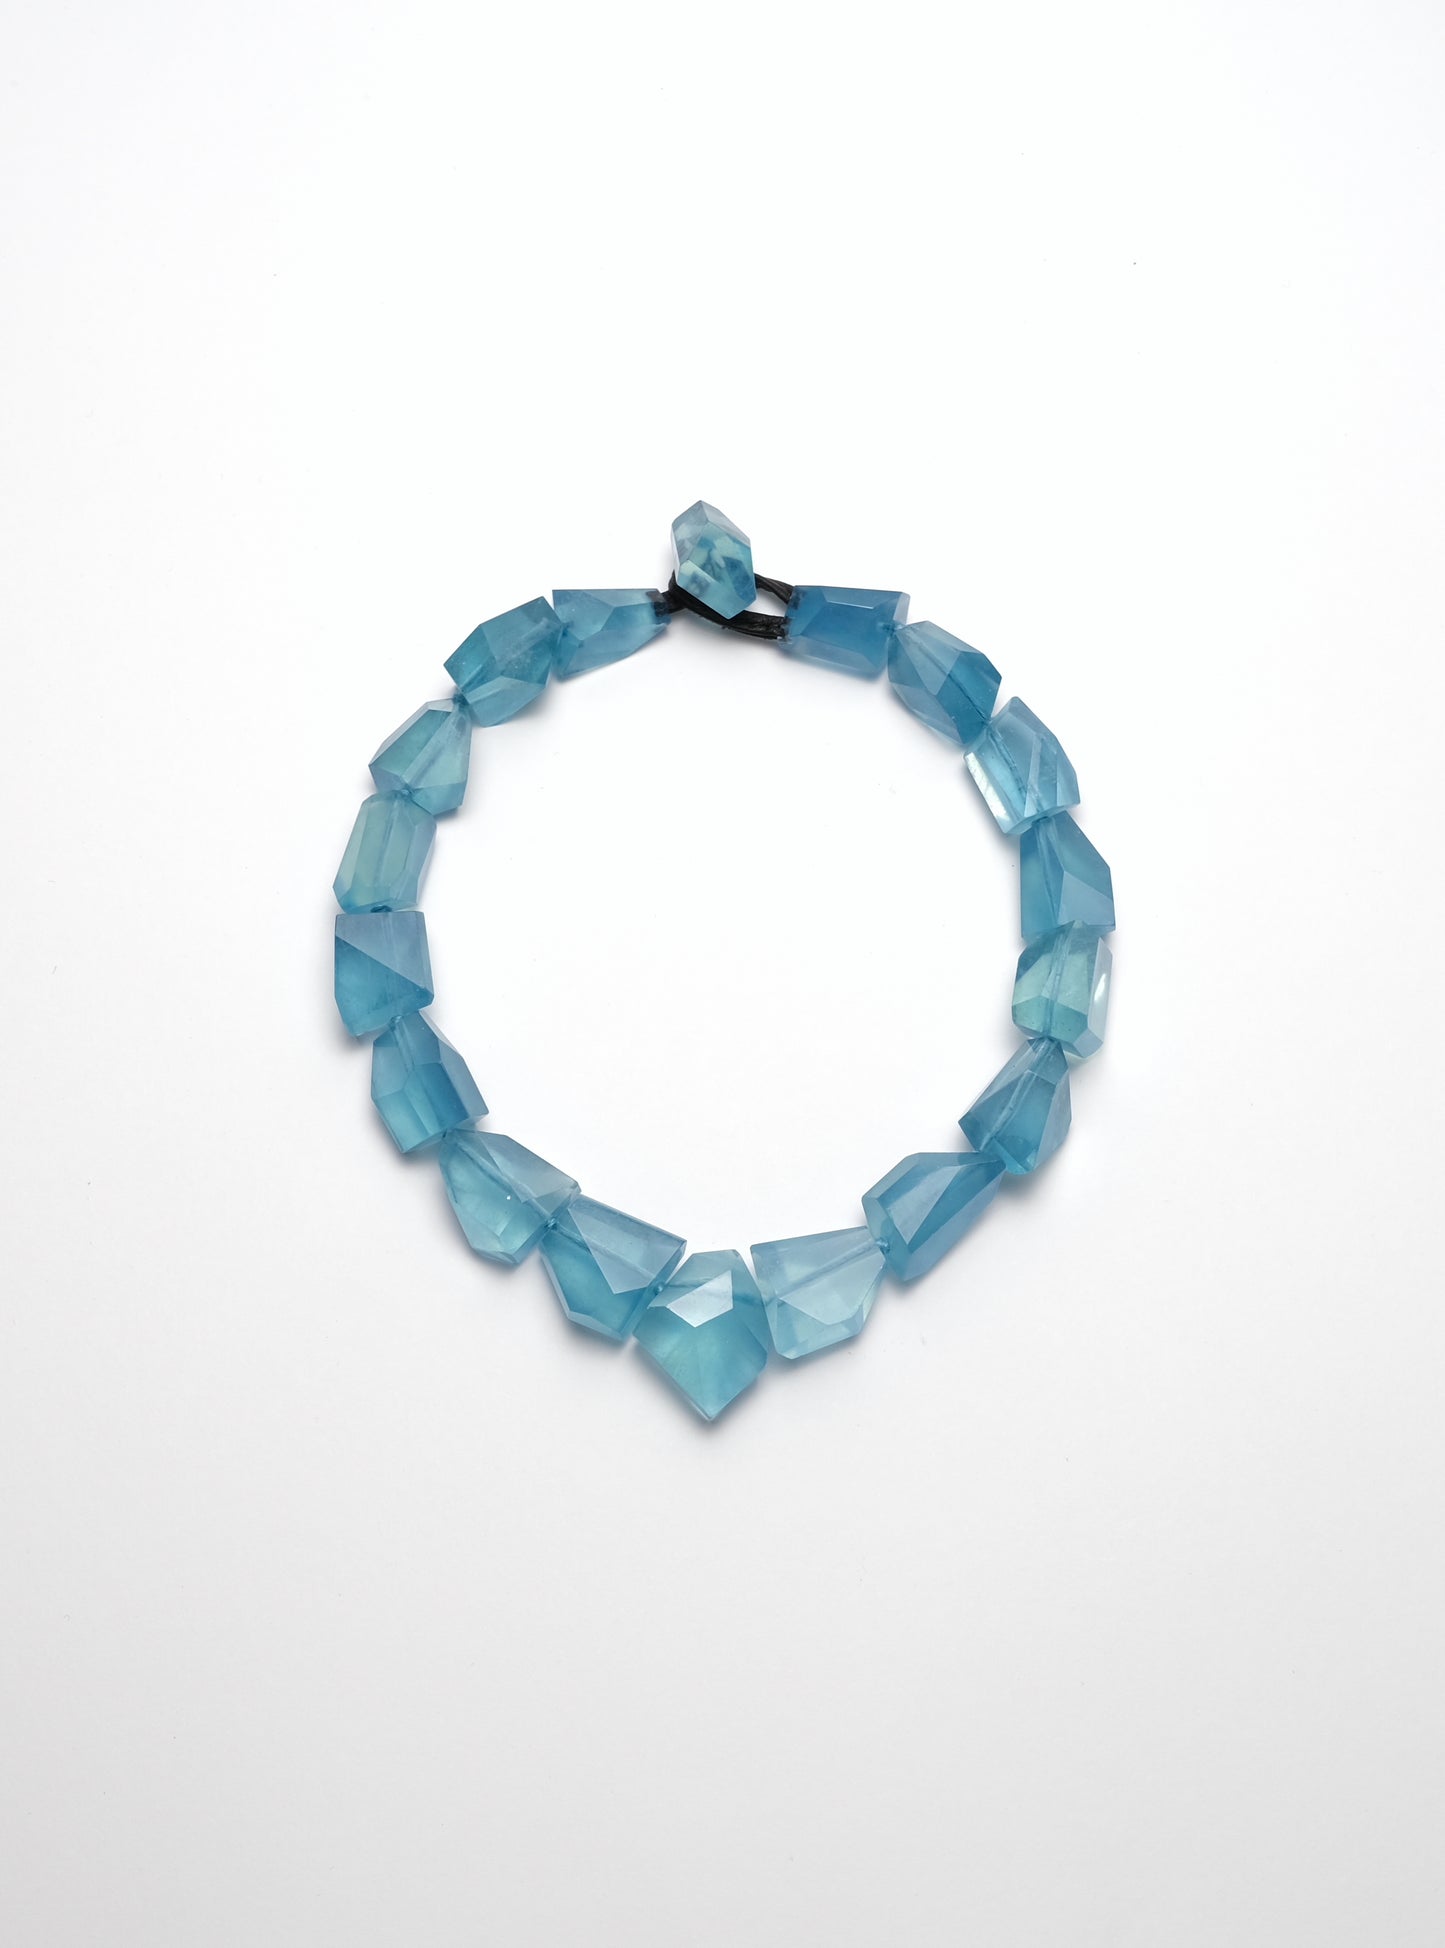 Necklace in aquamarine